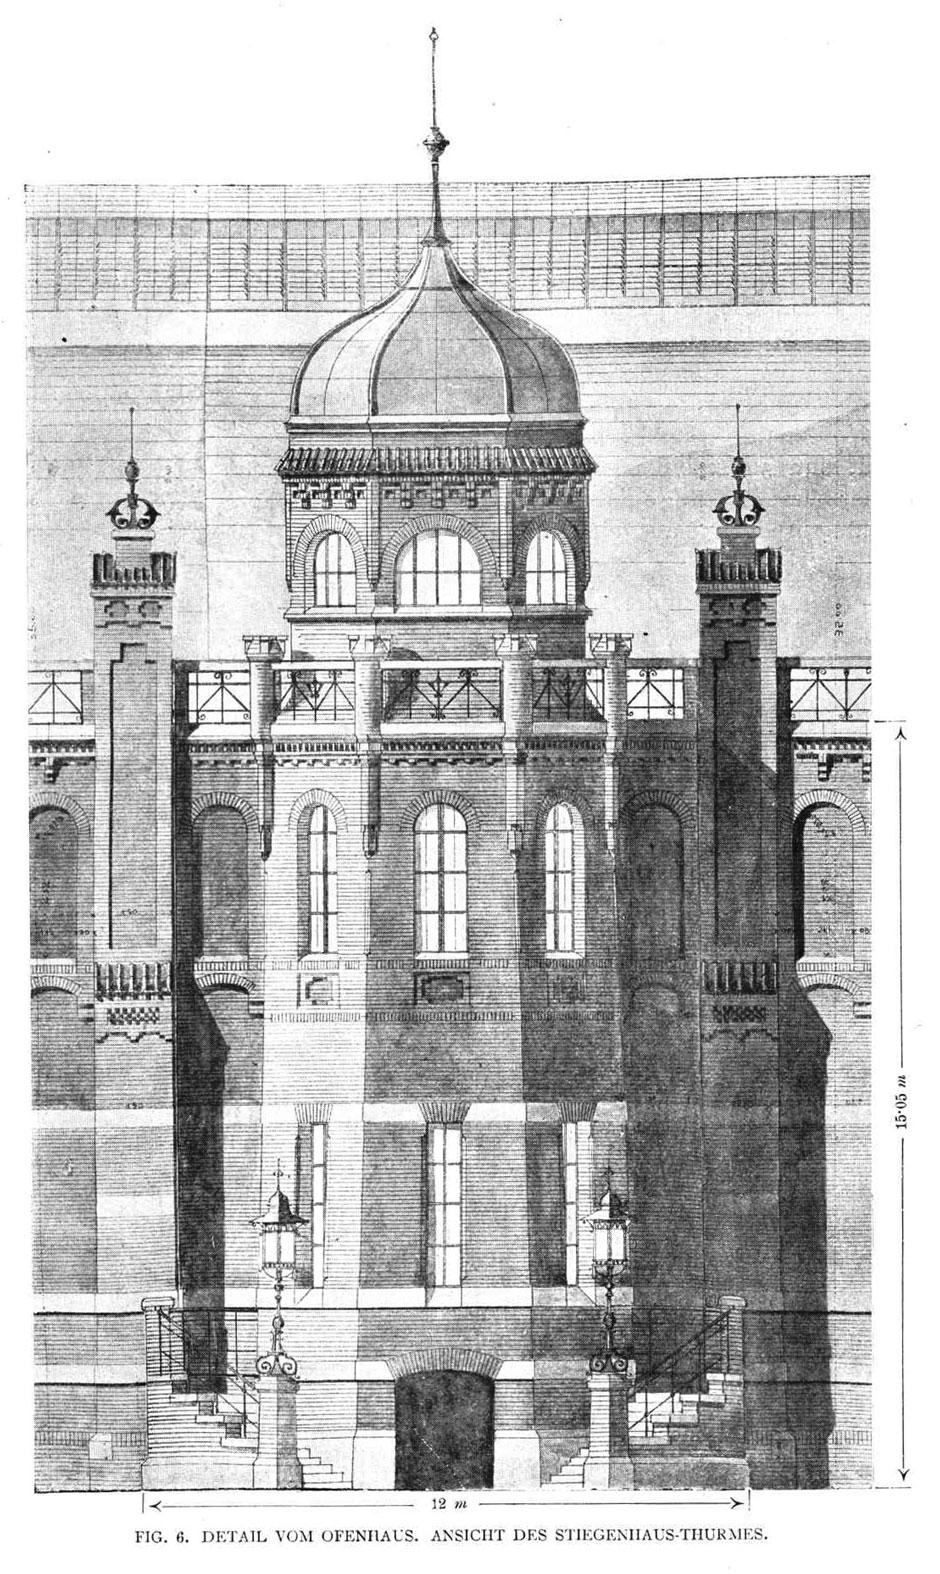 Archivbild: Fig. 6, Detail vom Ofenhaus, Ansicht des Stiegenhaus-Turmes